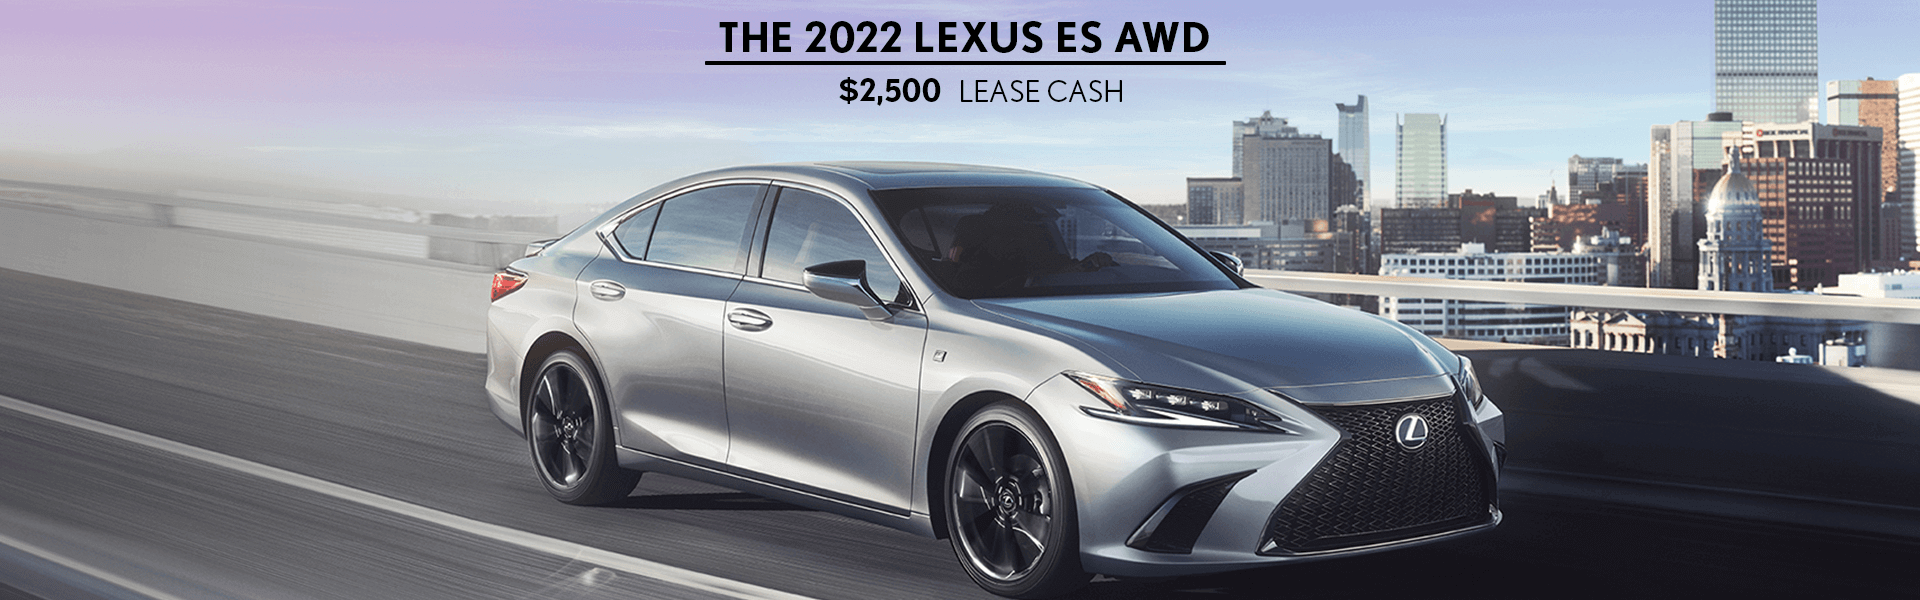 2022 Lexus ES offer